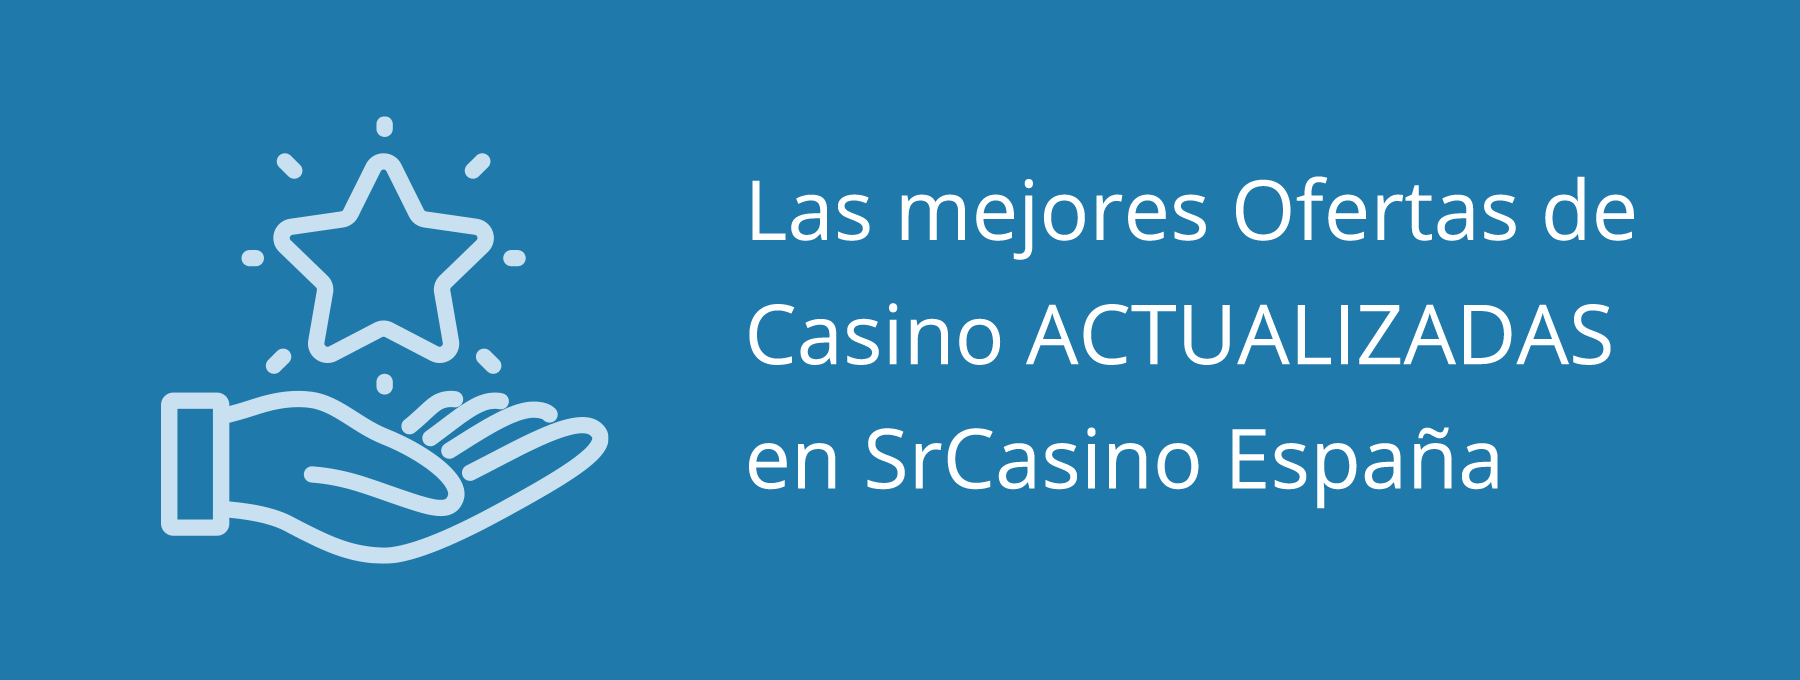 Mejores ofertas y promociones de casino en España